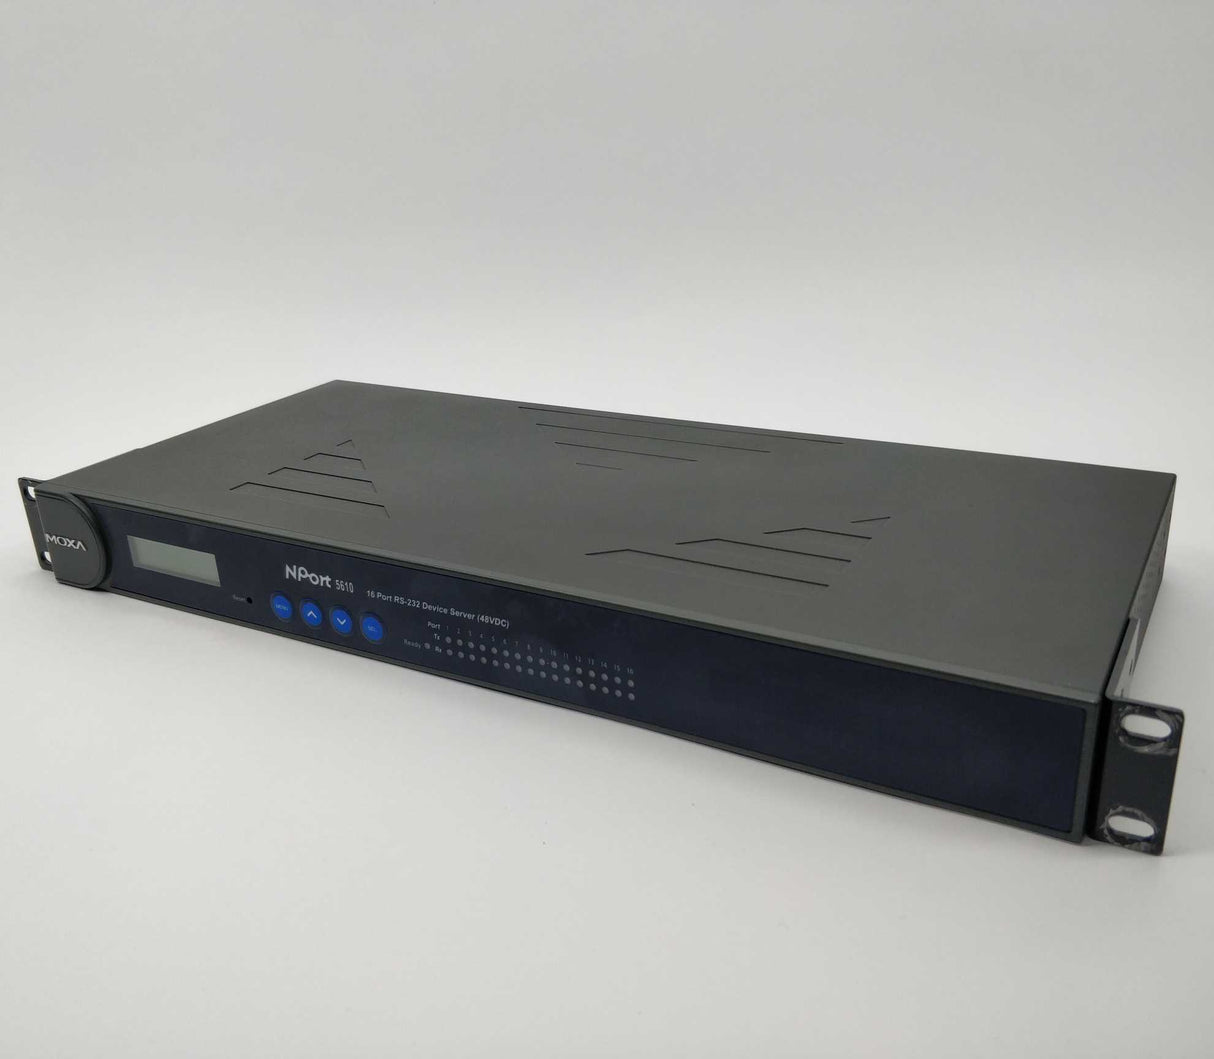 Moxa NPort 5610-16-48V 16 Port RS-232 Device server (48VDC)